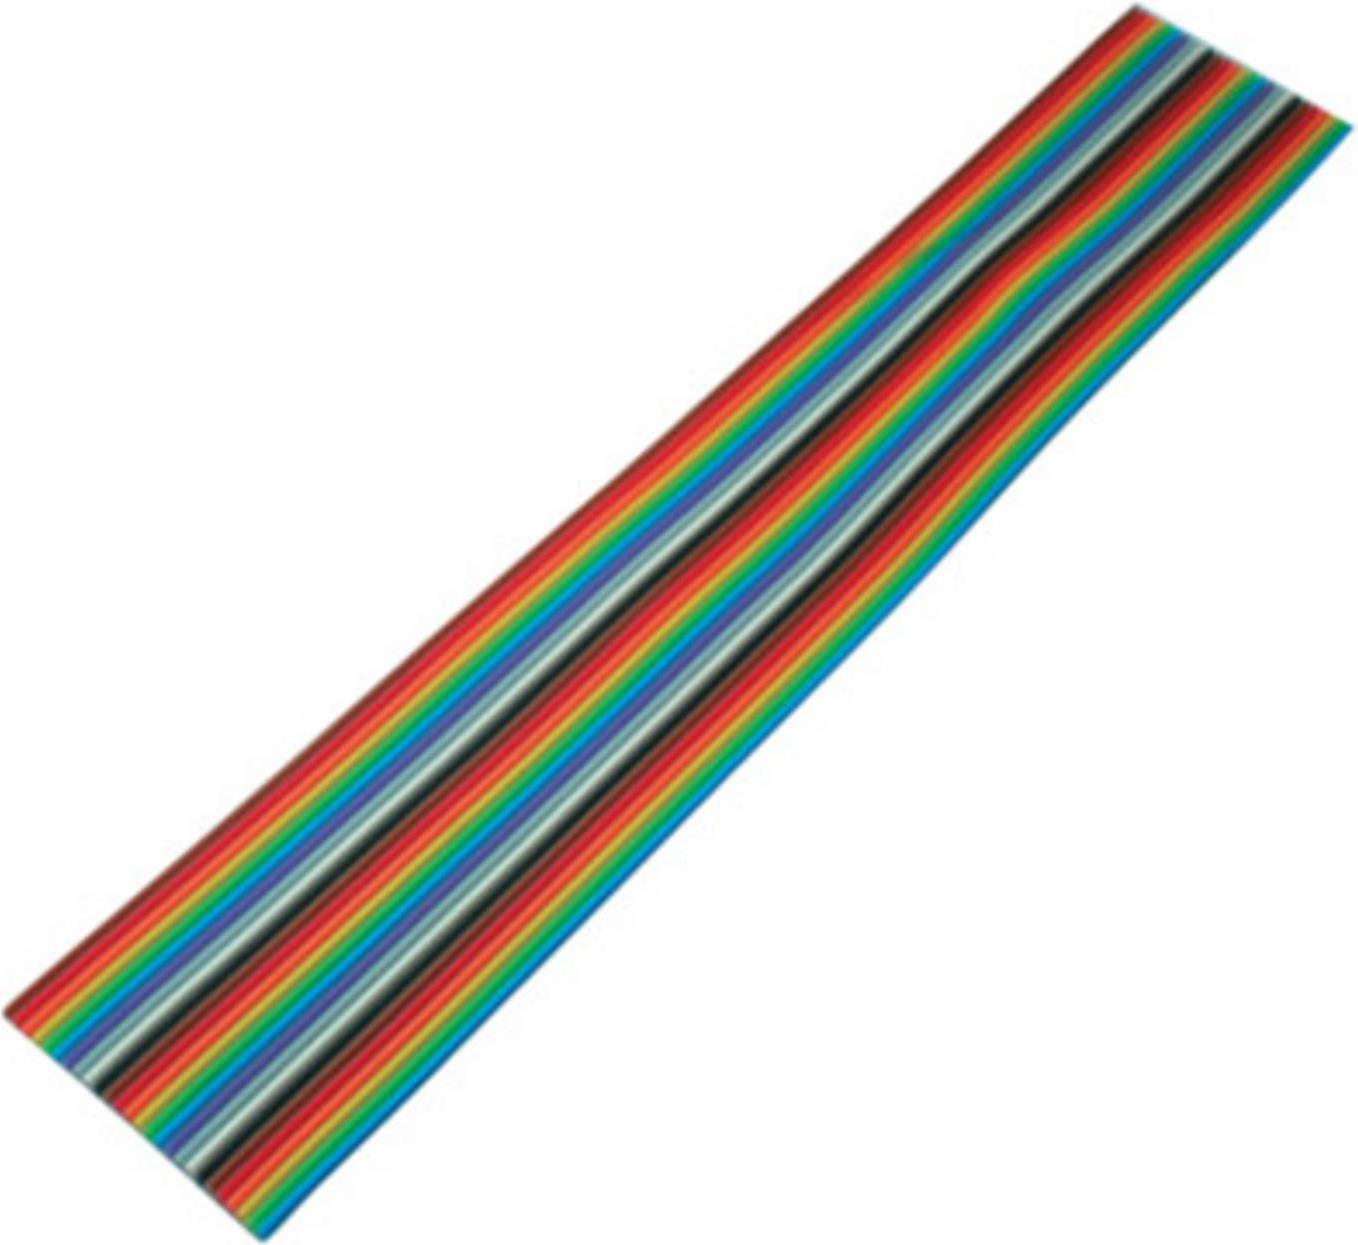 S-CONN S/CONN maximum connectivity Flachkabel, farbig Raster 1,27 mm, 26 pin, 30,5m (79069)